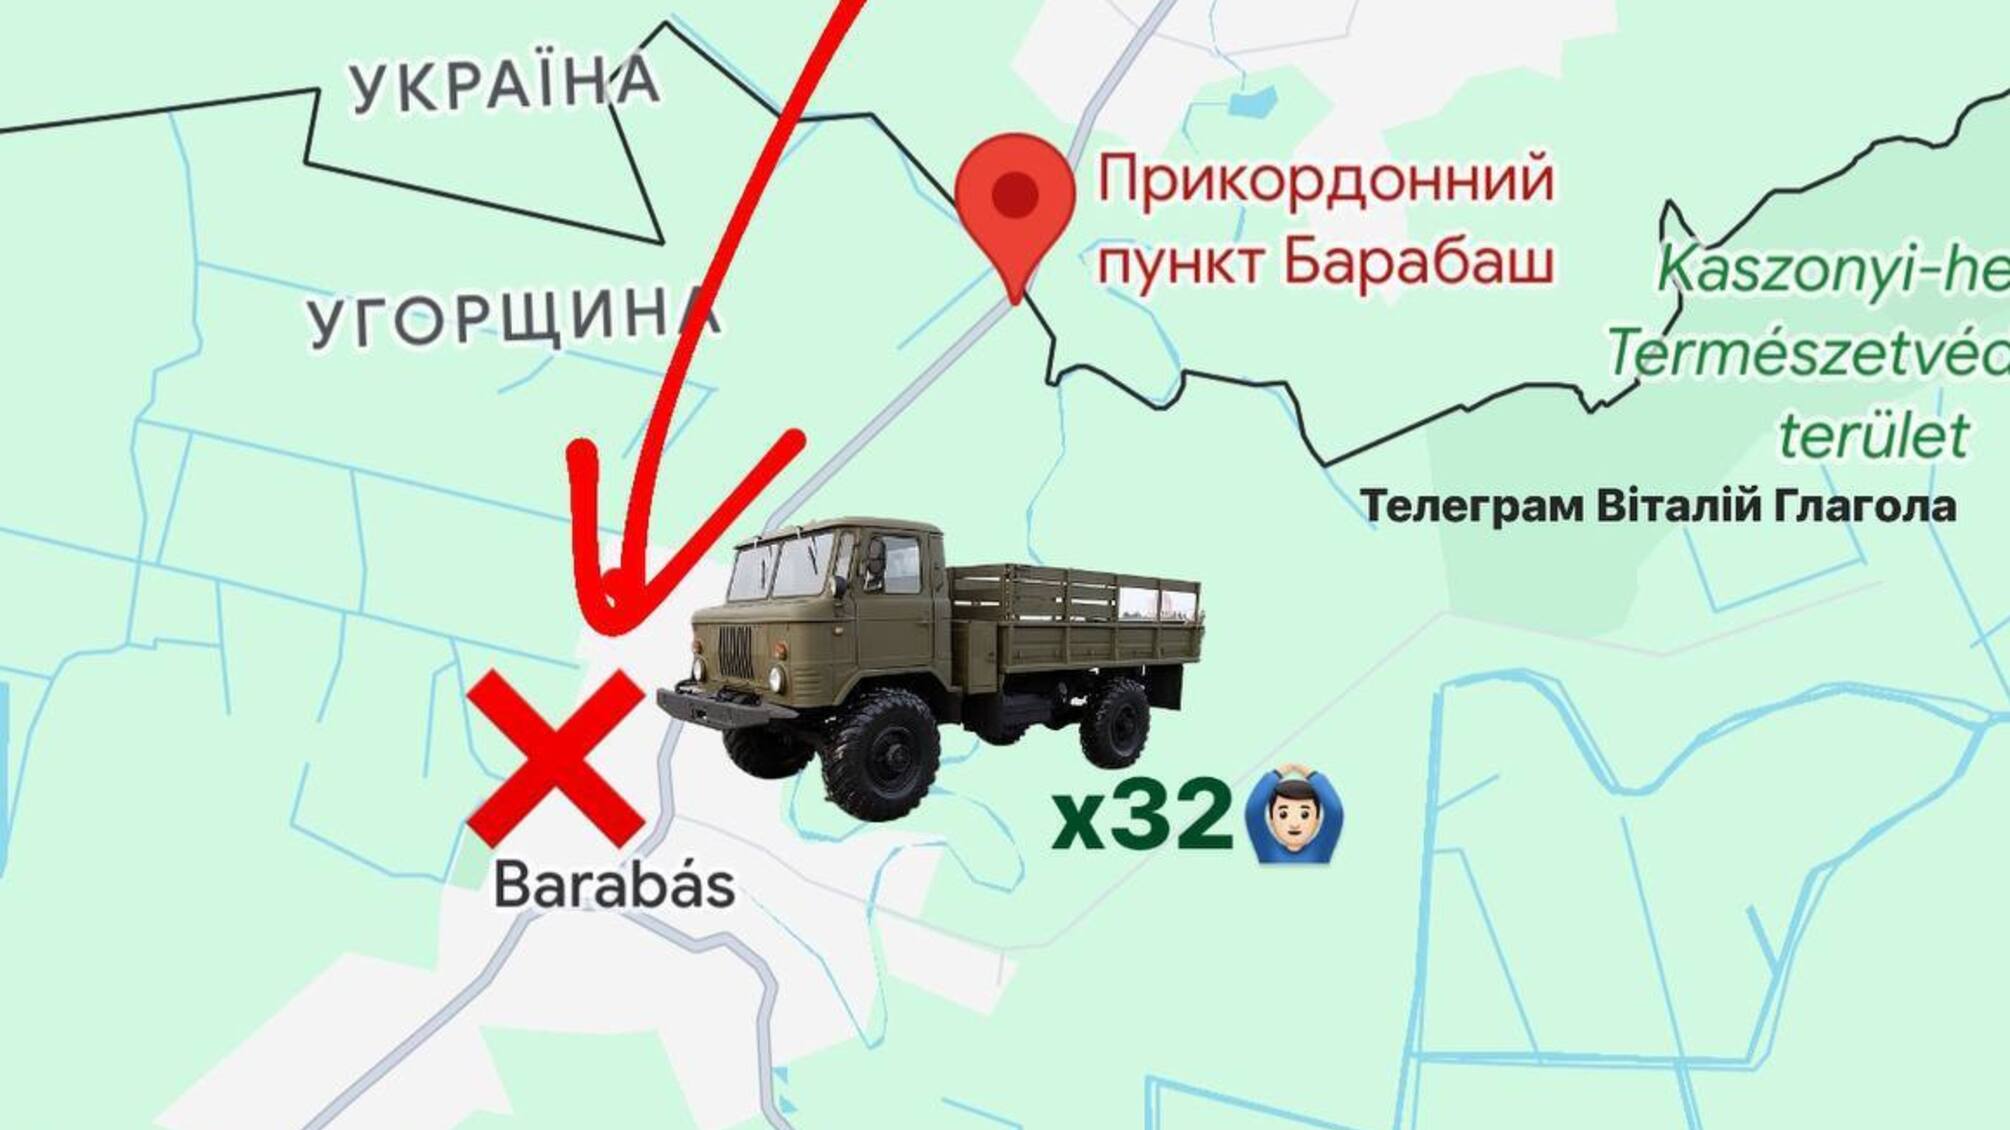 Прорыв границы на Закарпатье: 32 человека на ГАЗ-66 с черными военными номерами задержаны в Венгрии